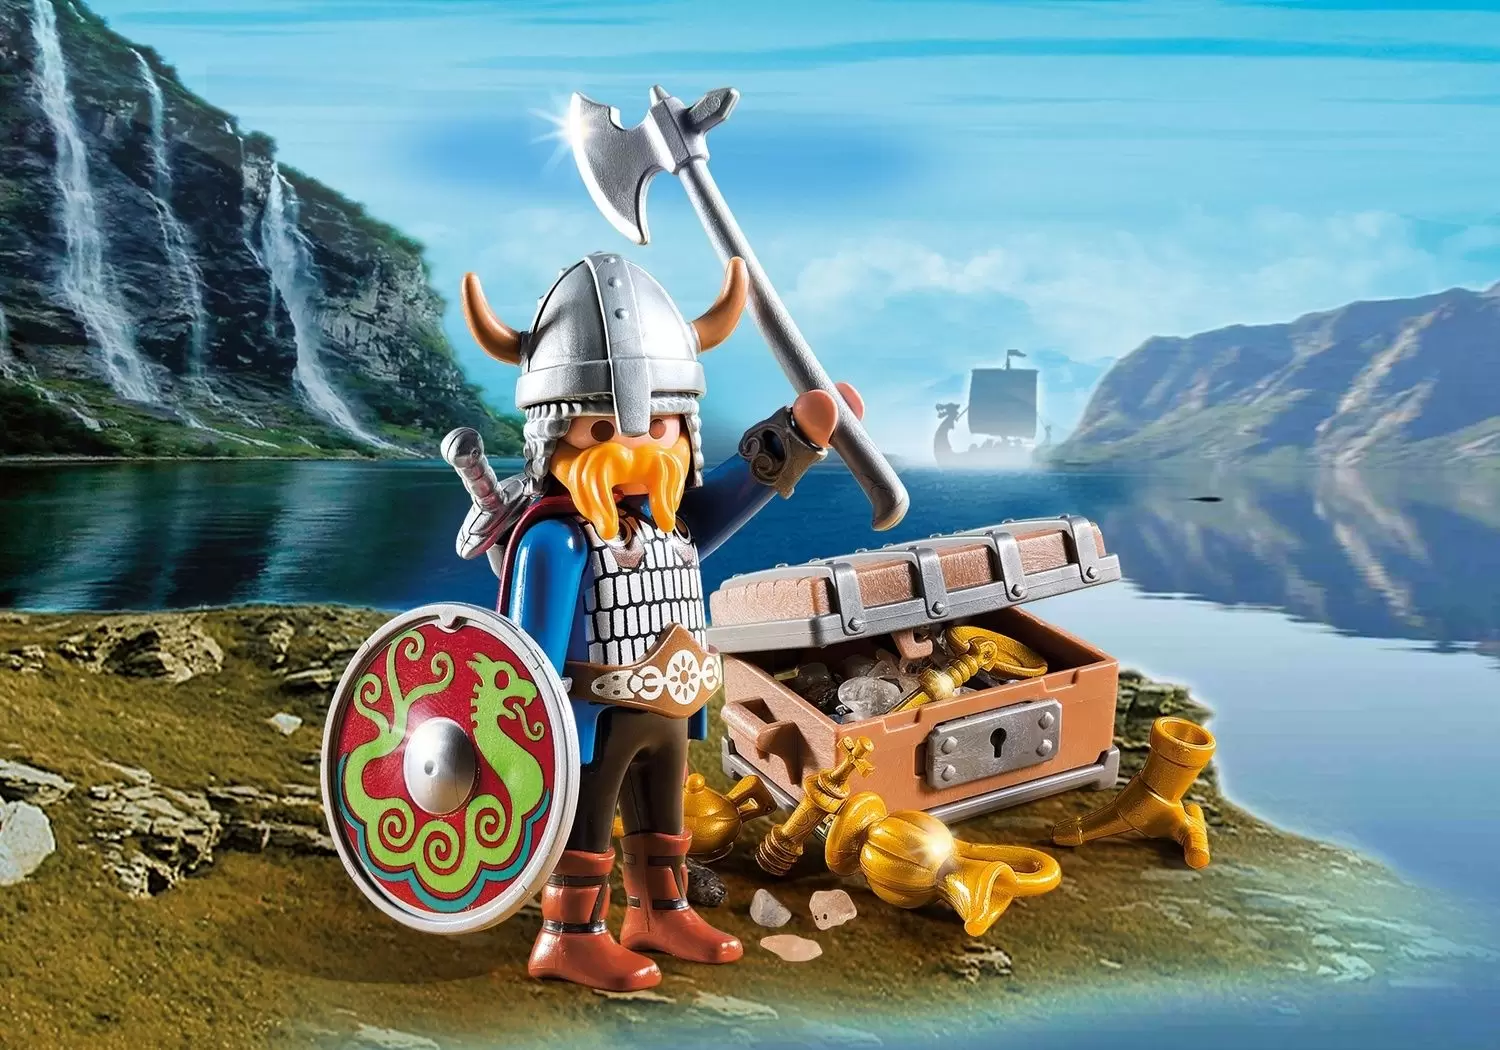 Playmobil SpecialPlus -  Viking with treasure